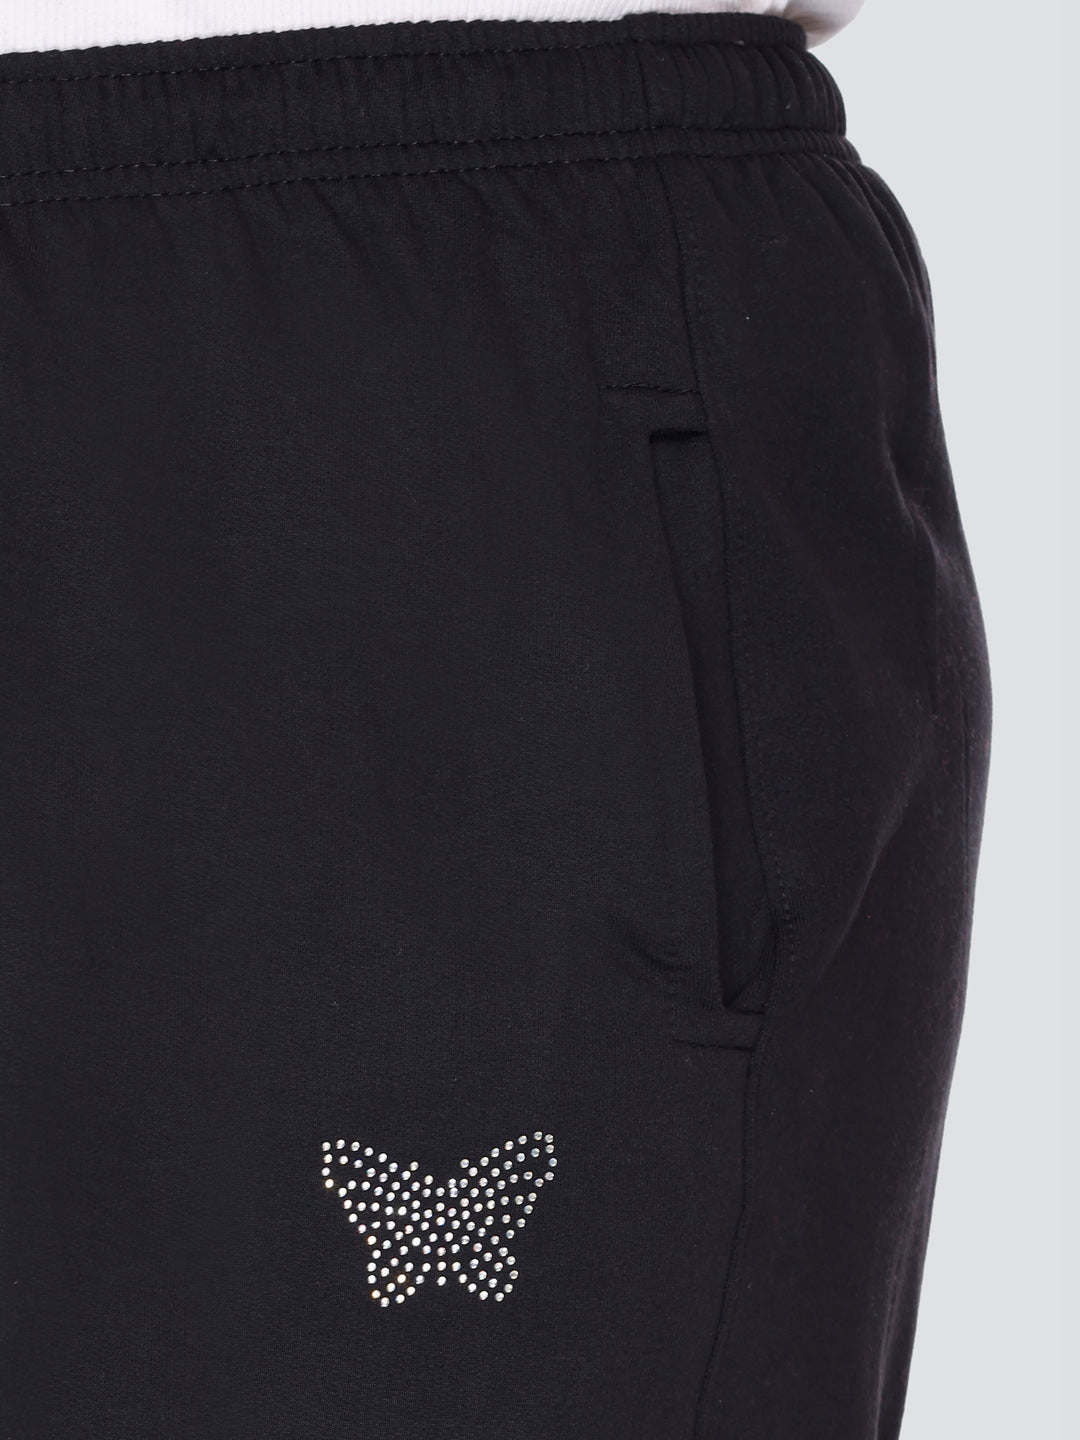 Stylish Black Cotton Fleece Winter Wear Track Pants For Women Online In India